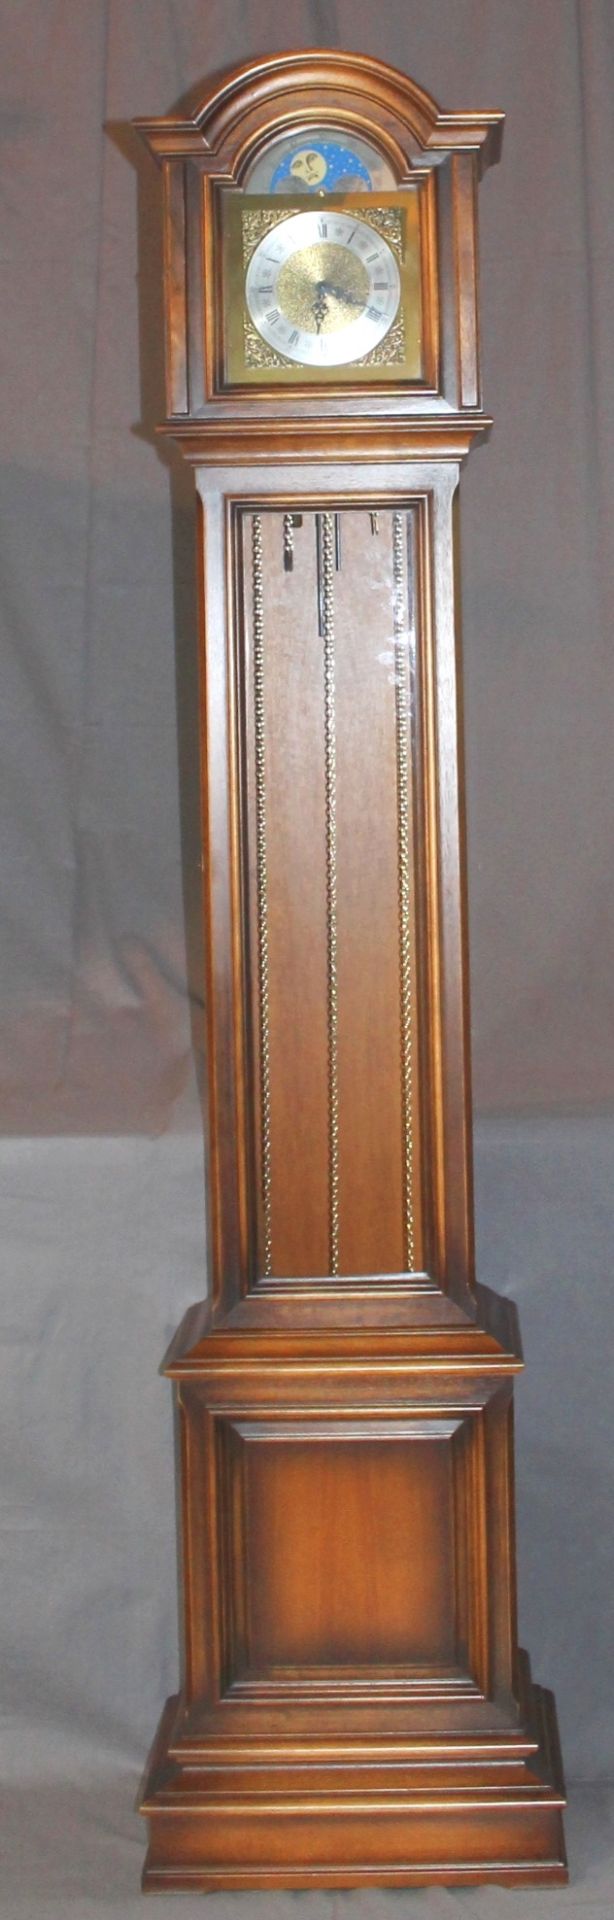 1 kleine Standuhr, Holzgehäuse, mit Mondphase, 3-gewichtig, Messingzifferblatt, ca. 187cm x 36cm x